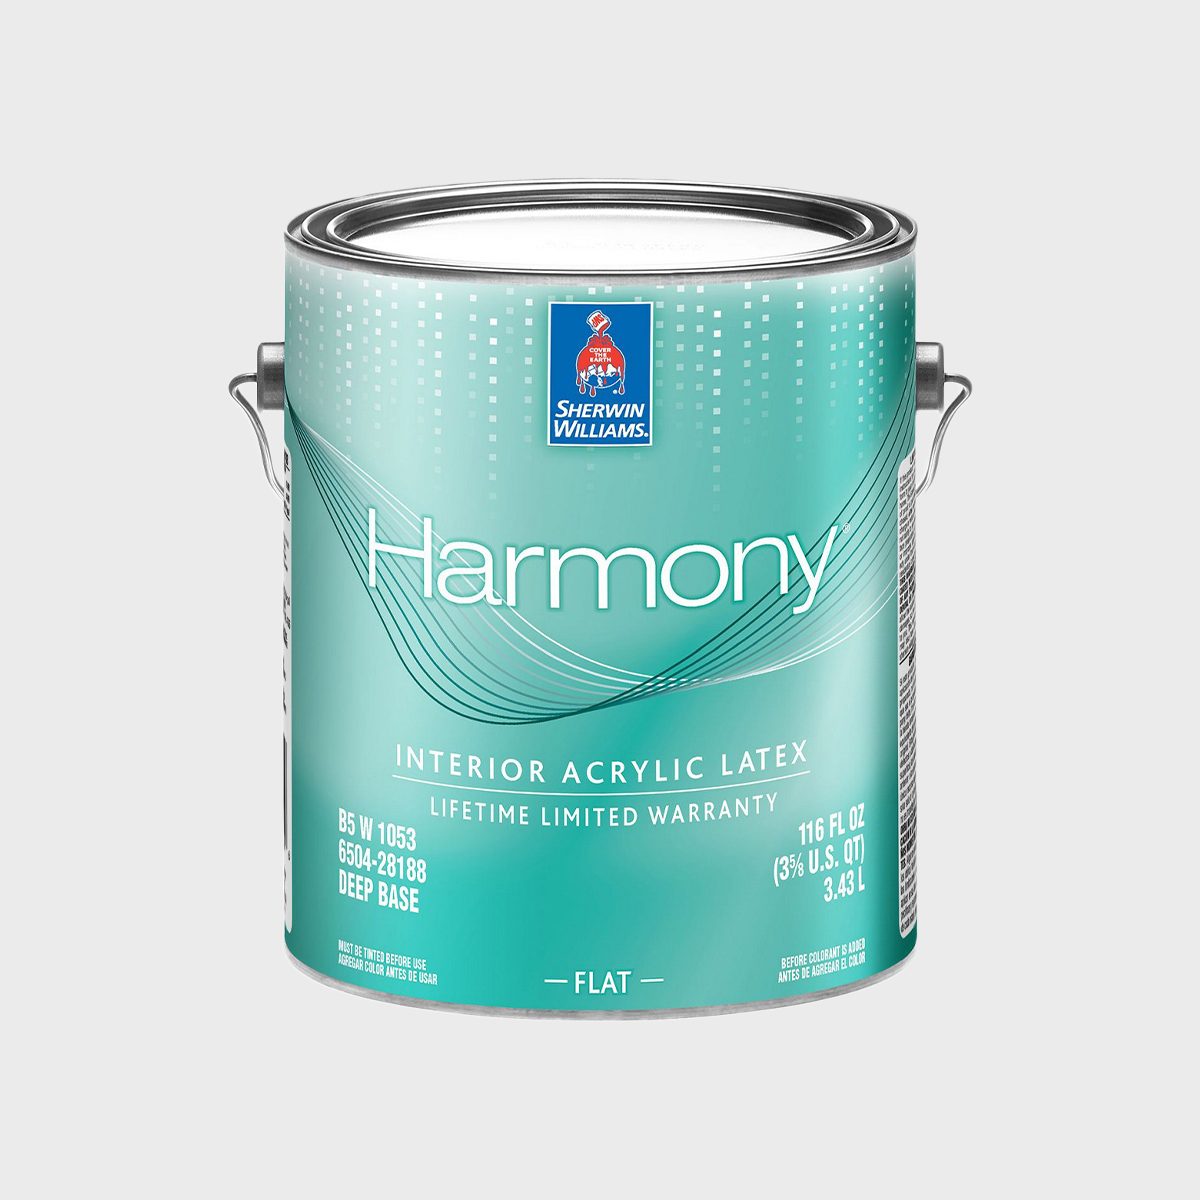 Harmony Interior Acrylic Latex Ecomm Via Sherwin Williams.com  ?resize=700